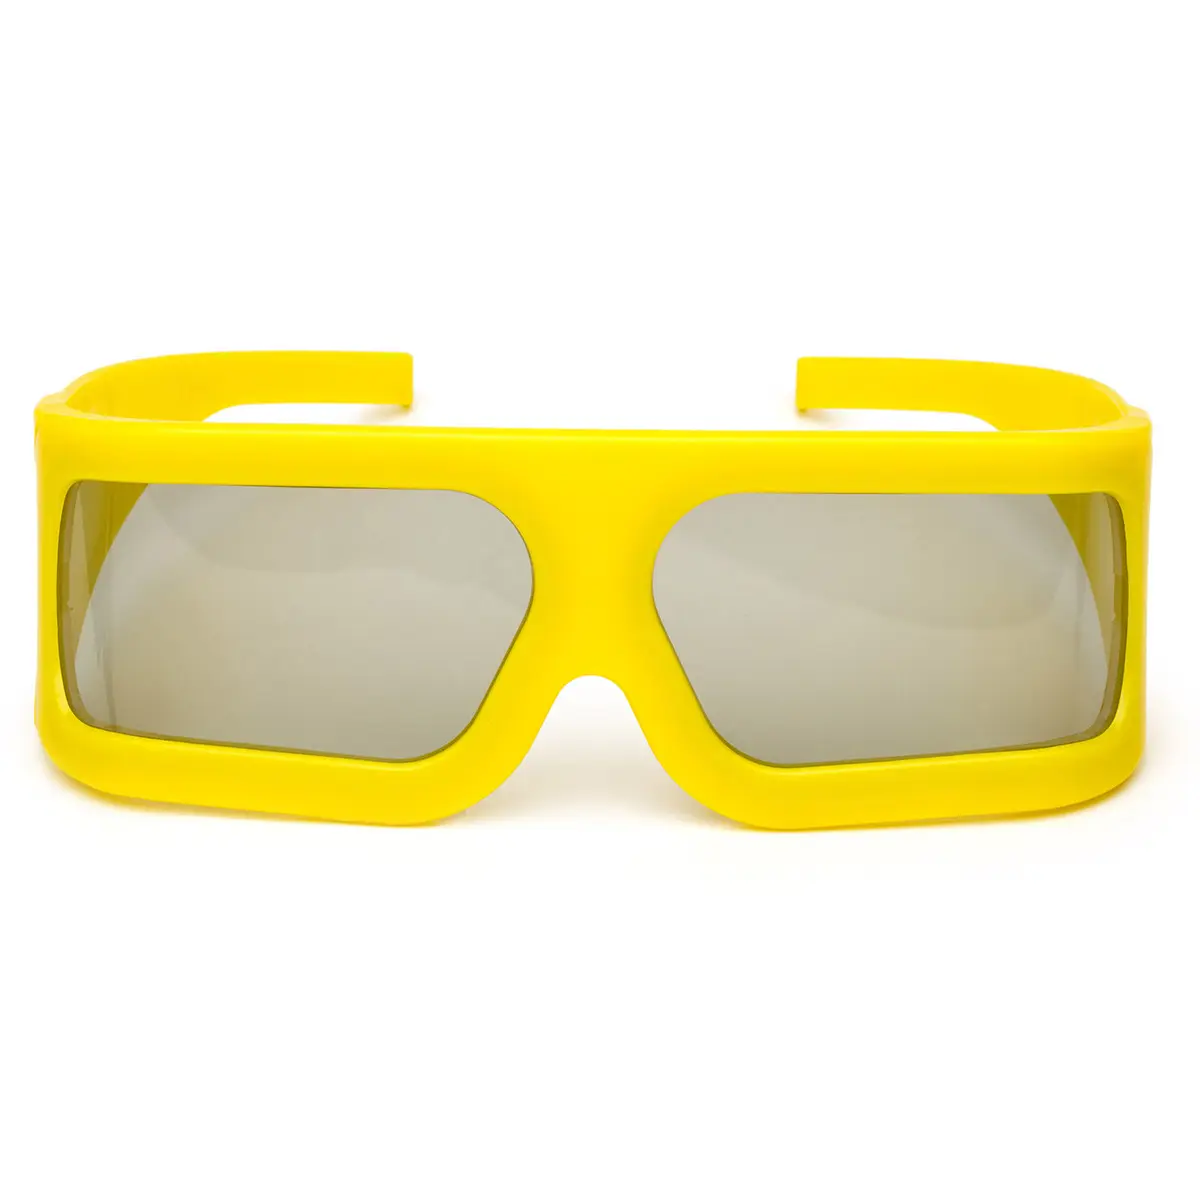 Sarı çerçeve büyük Lens uygun pasif polarize 3D gözlük 5D sinema için kullanılan